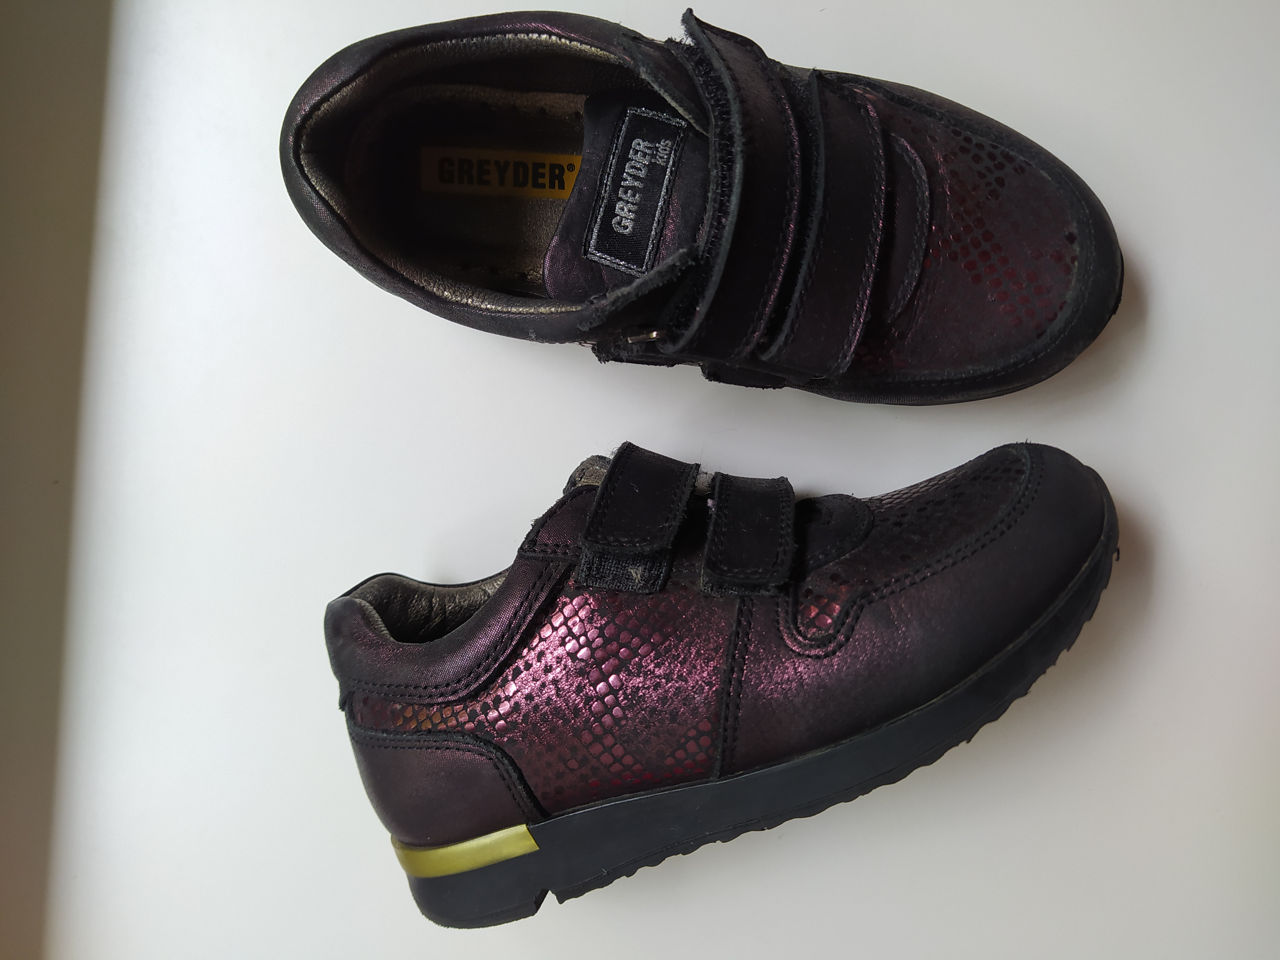 Обувь на осень 25, 27, 28 размер: кроссовки, ботинки, сапожки foto 8